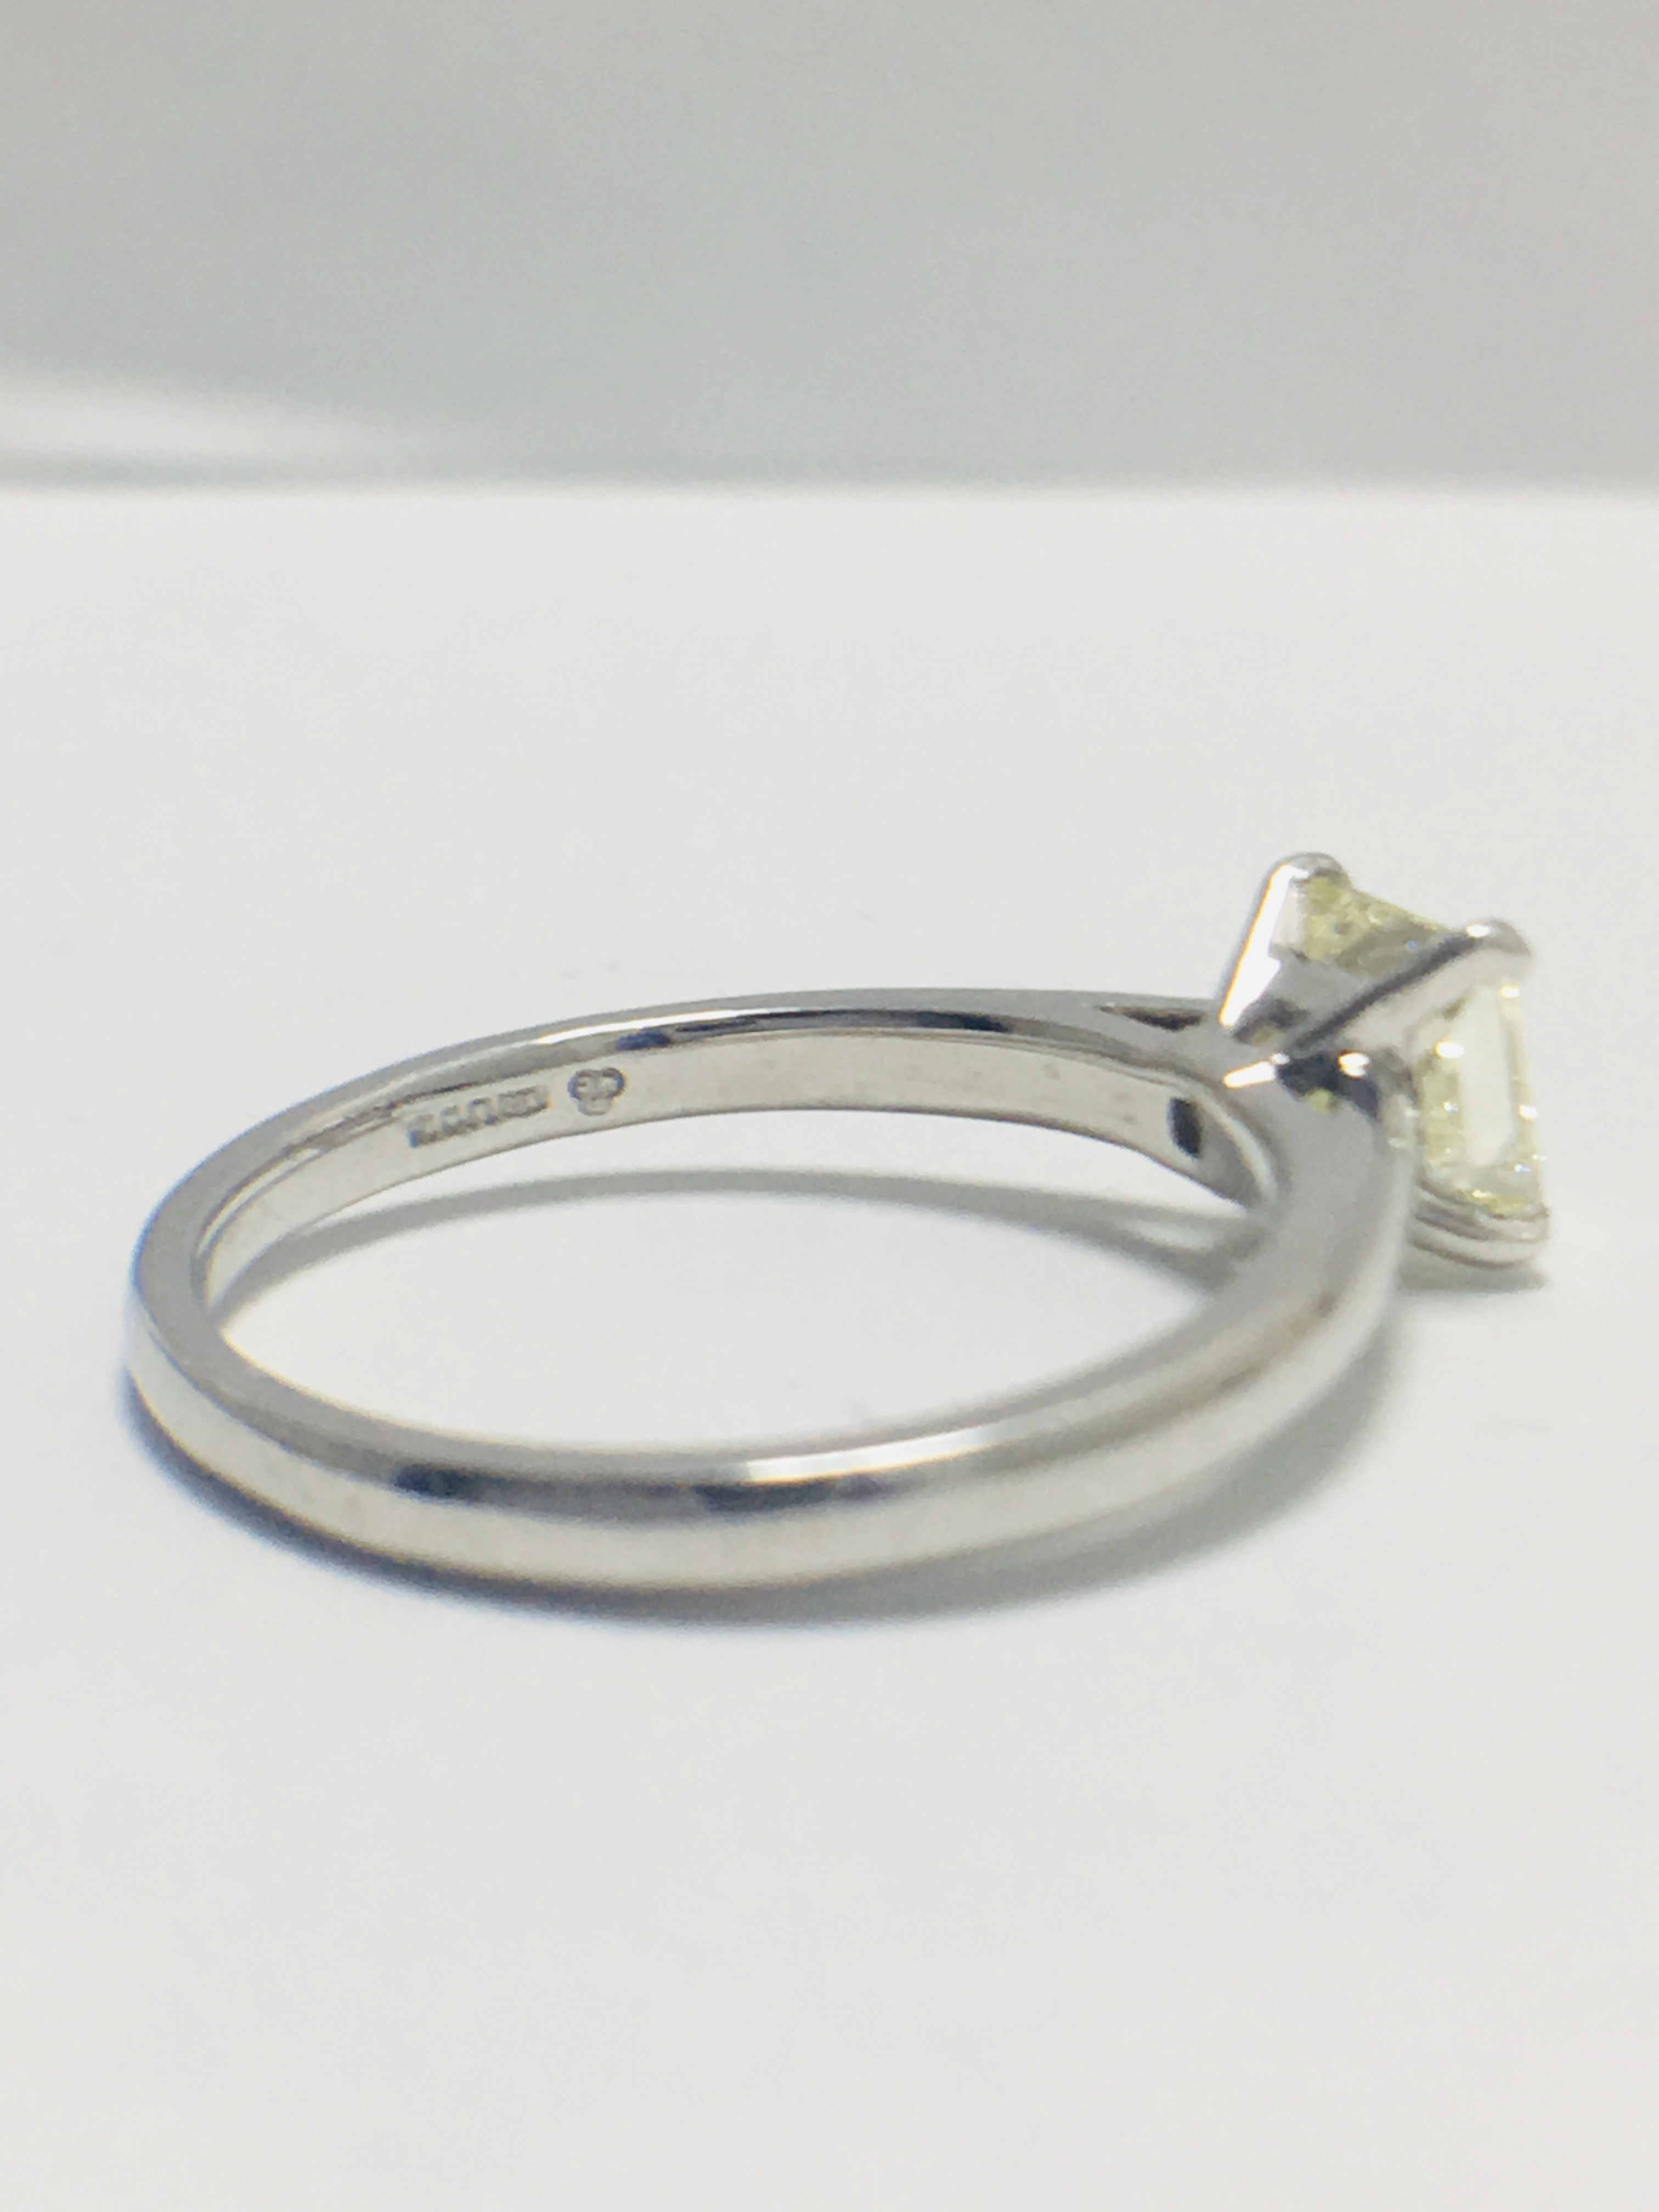 1ct platinum Diamond solitaire ring - Image 5 of 8